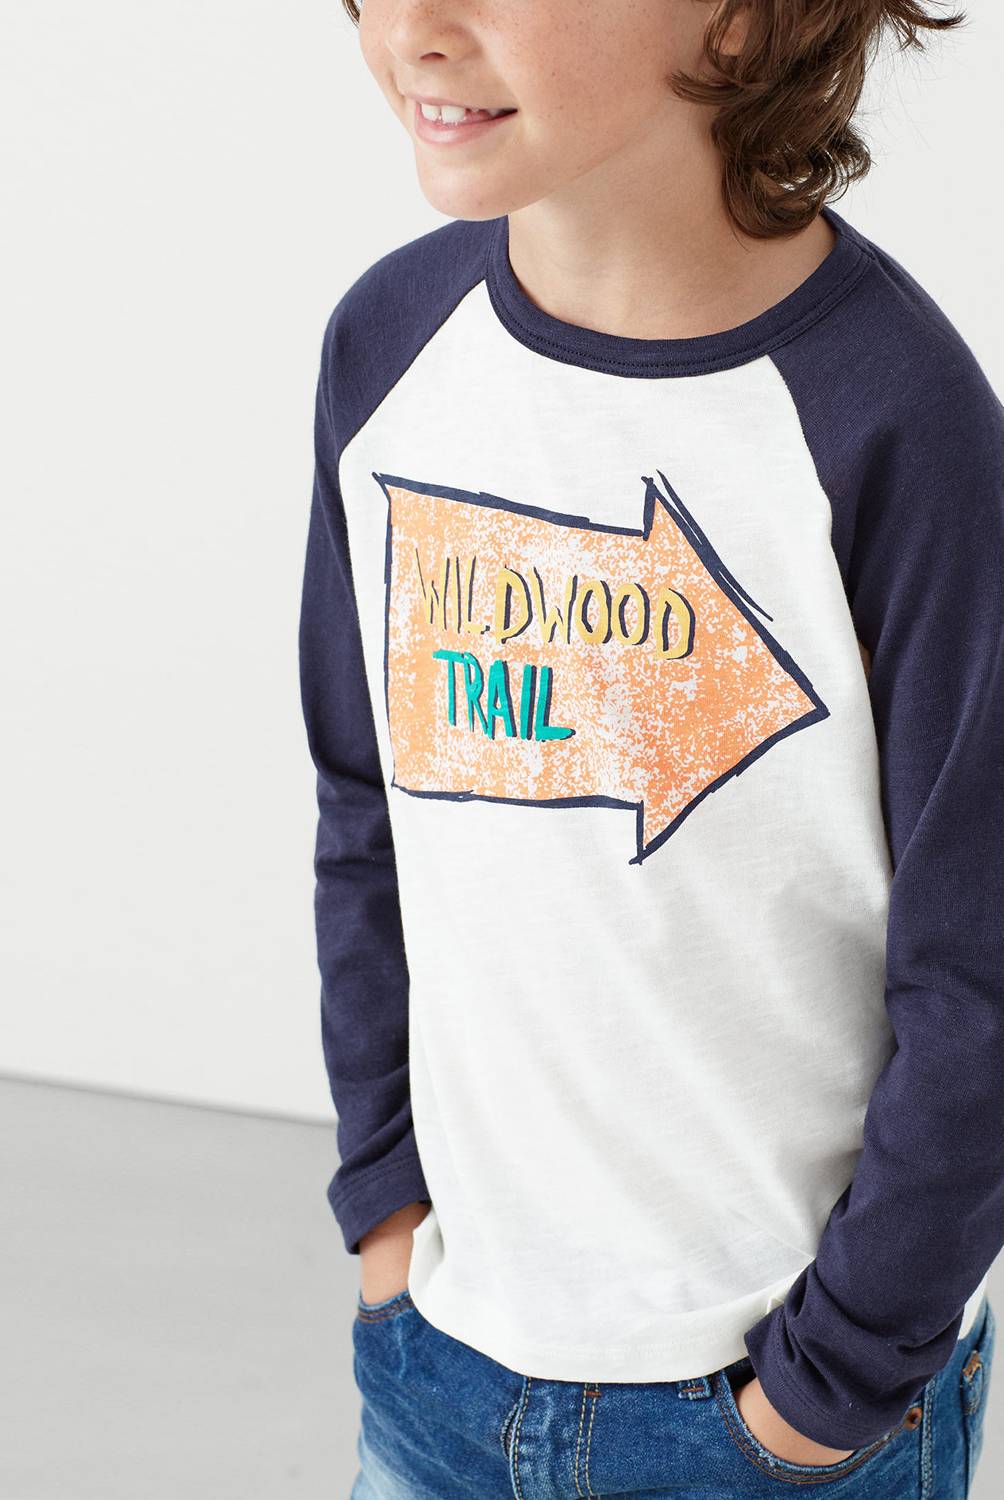  - Camiseta Trail